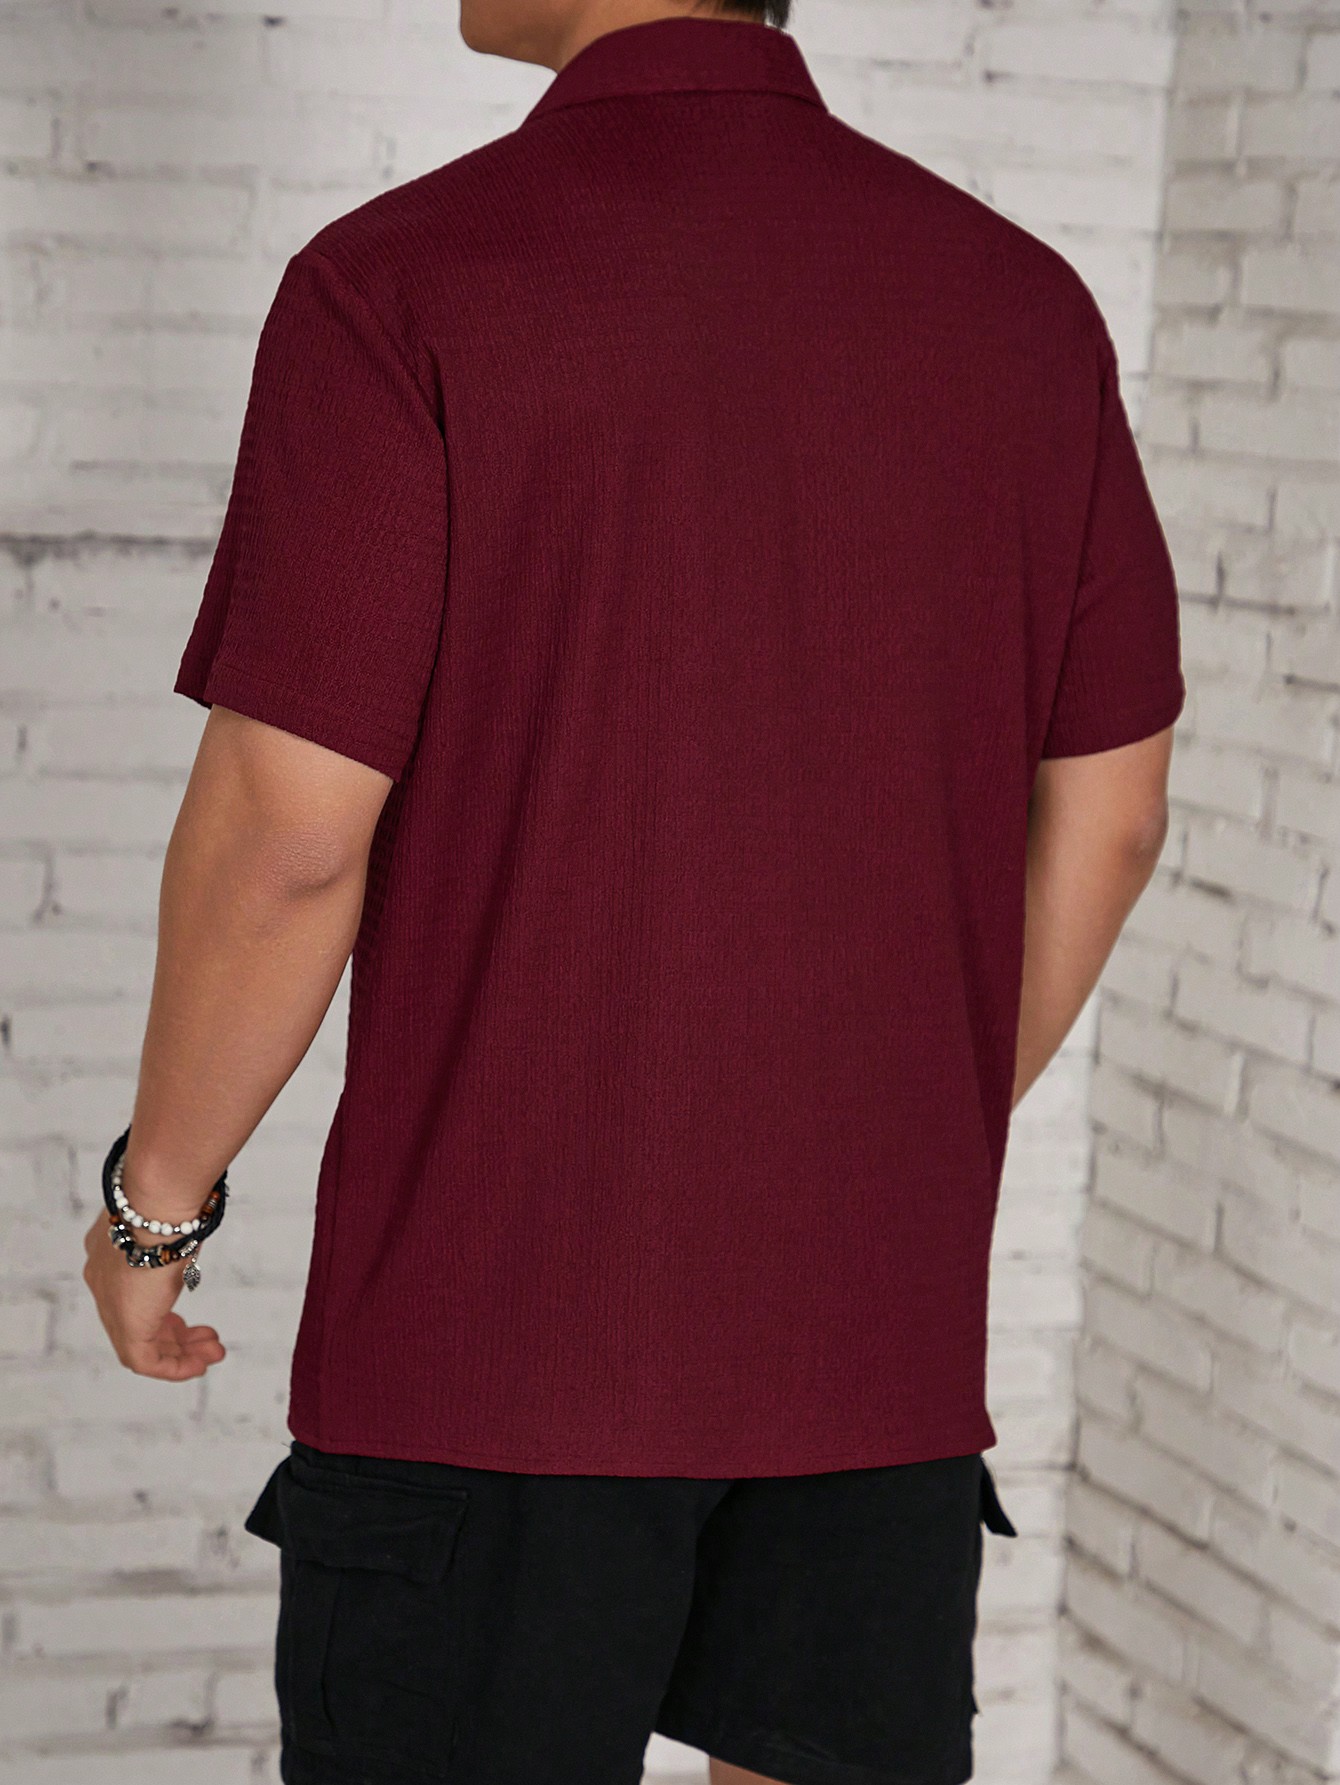 Мужская текстурированная рубашка на пуговицах с коротким рукавом Manfinity Homme, расти роуз мужская текстурированная рубашка с коротким рукавом manfinity homme на пуговицах спереди розовый